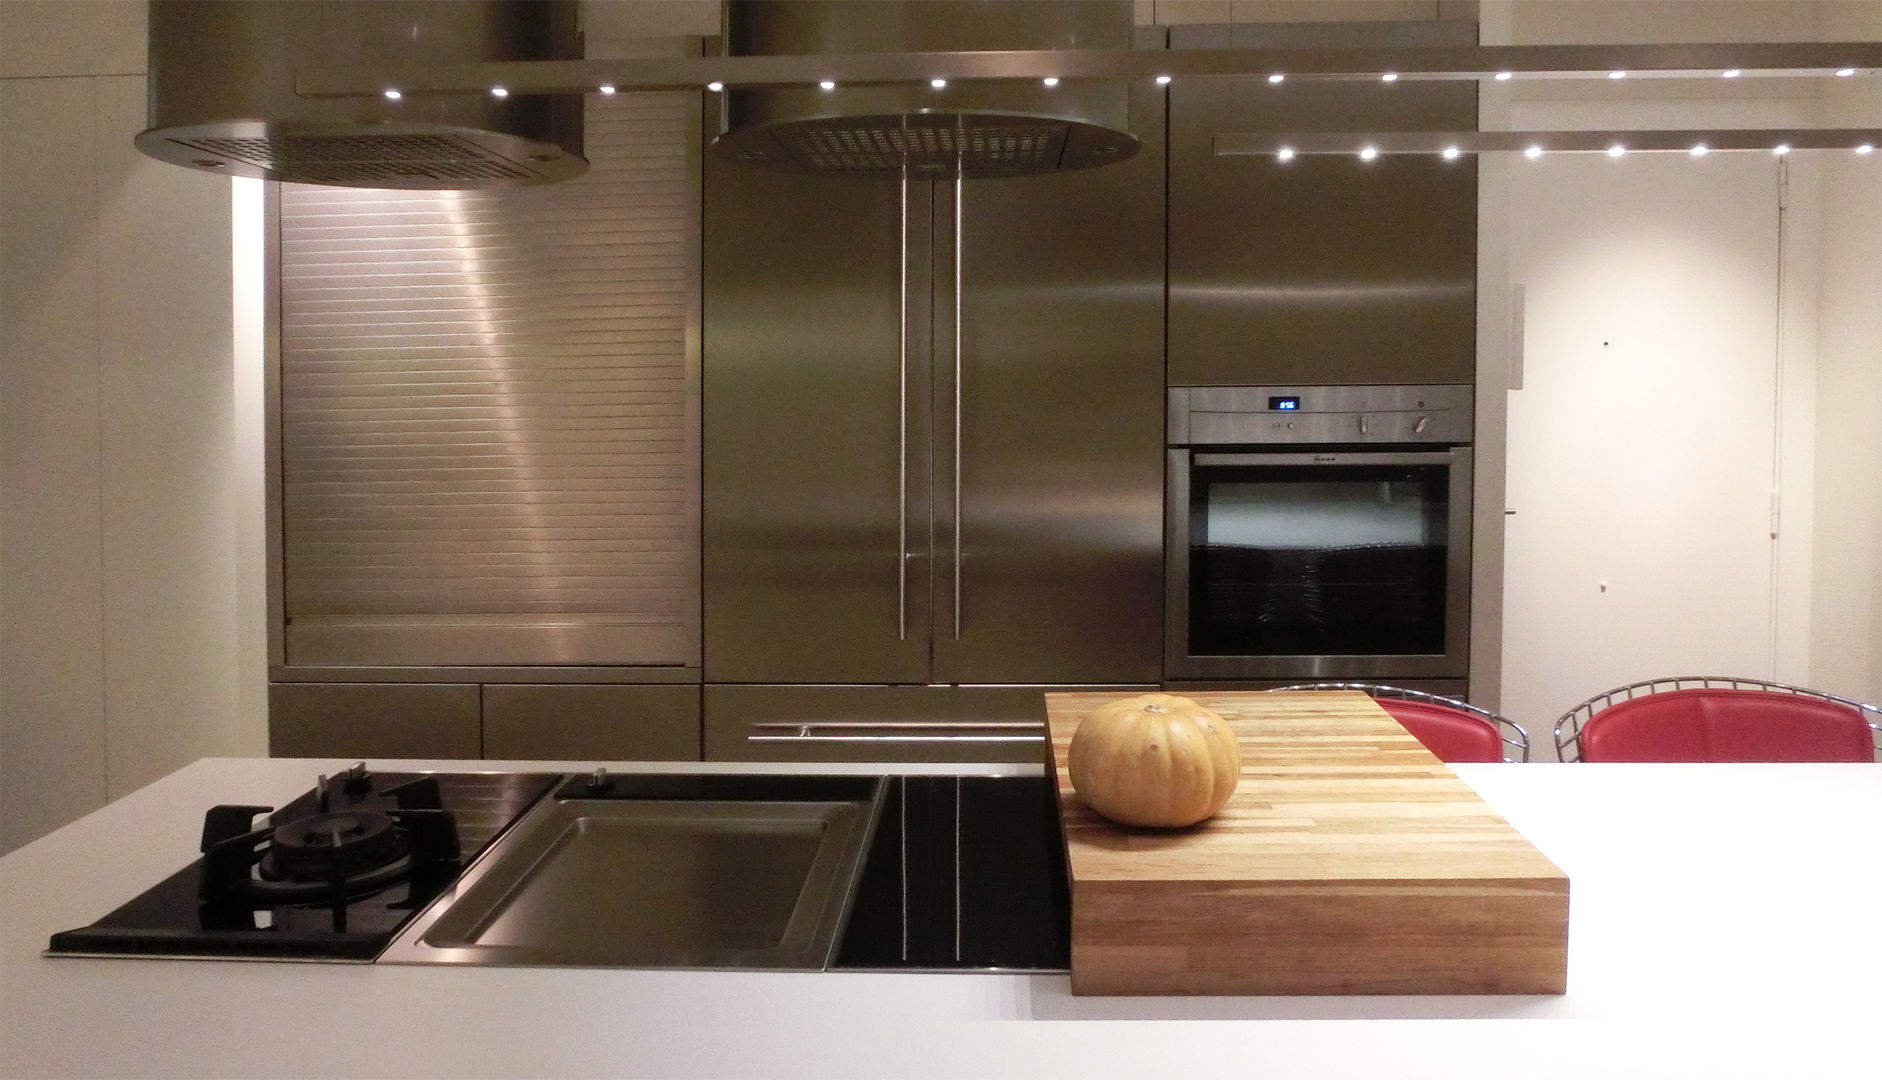 Detalle de los 3 módulos de coccion Daifuku Designs Cocinas minimalistas kitchen cabinet,kitchen island